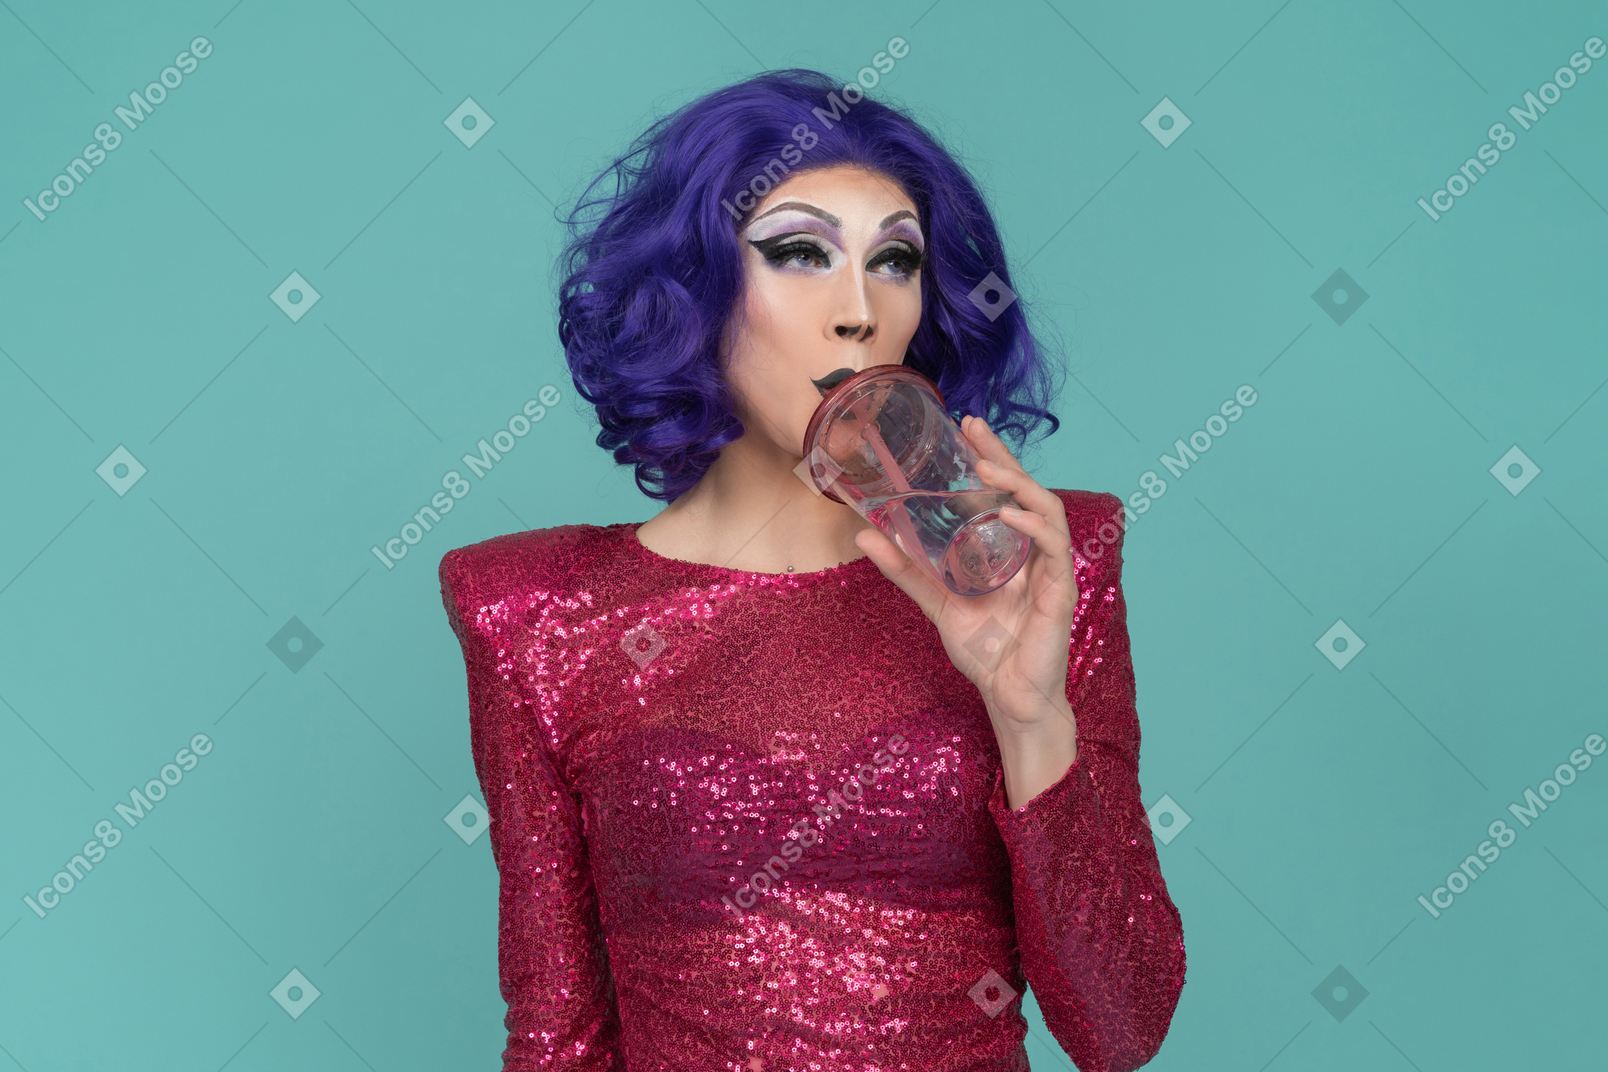 Drag queen en robe à paillettes roses buvant un verre dans une tasse en plastique